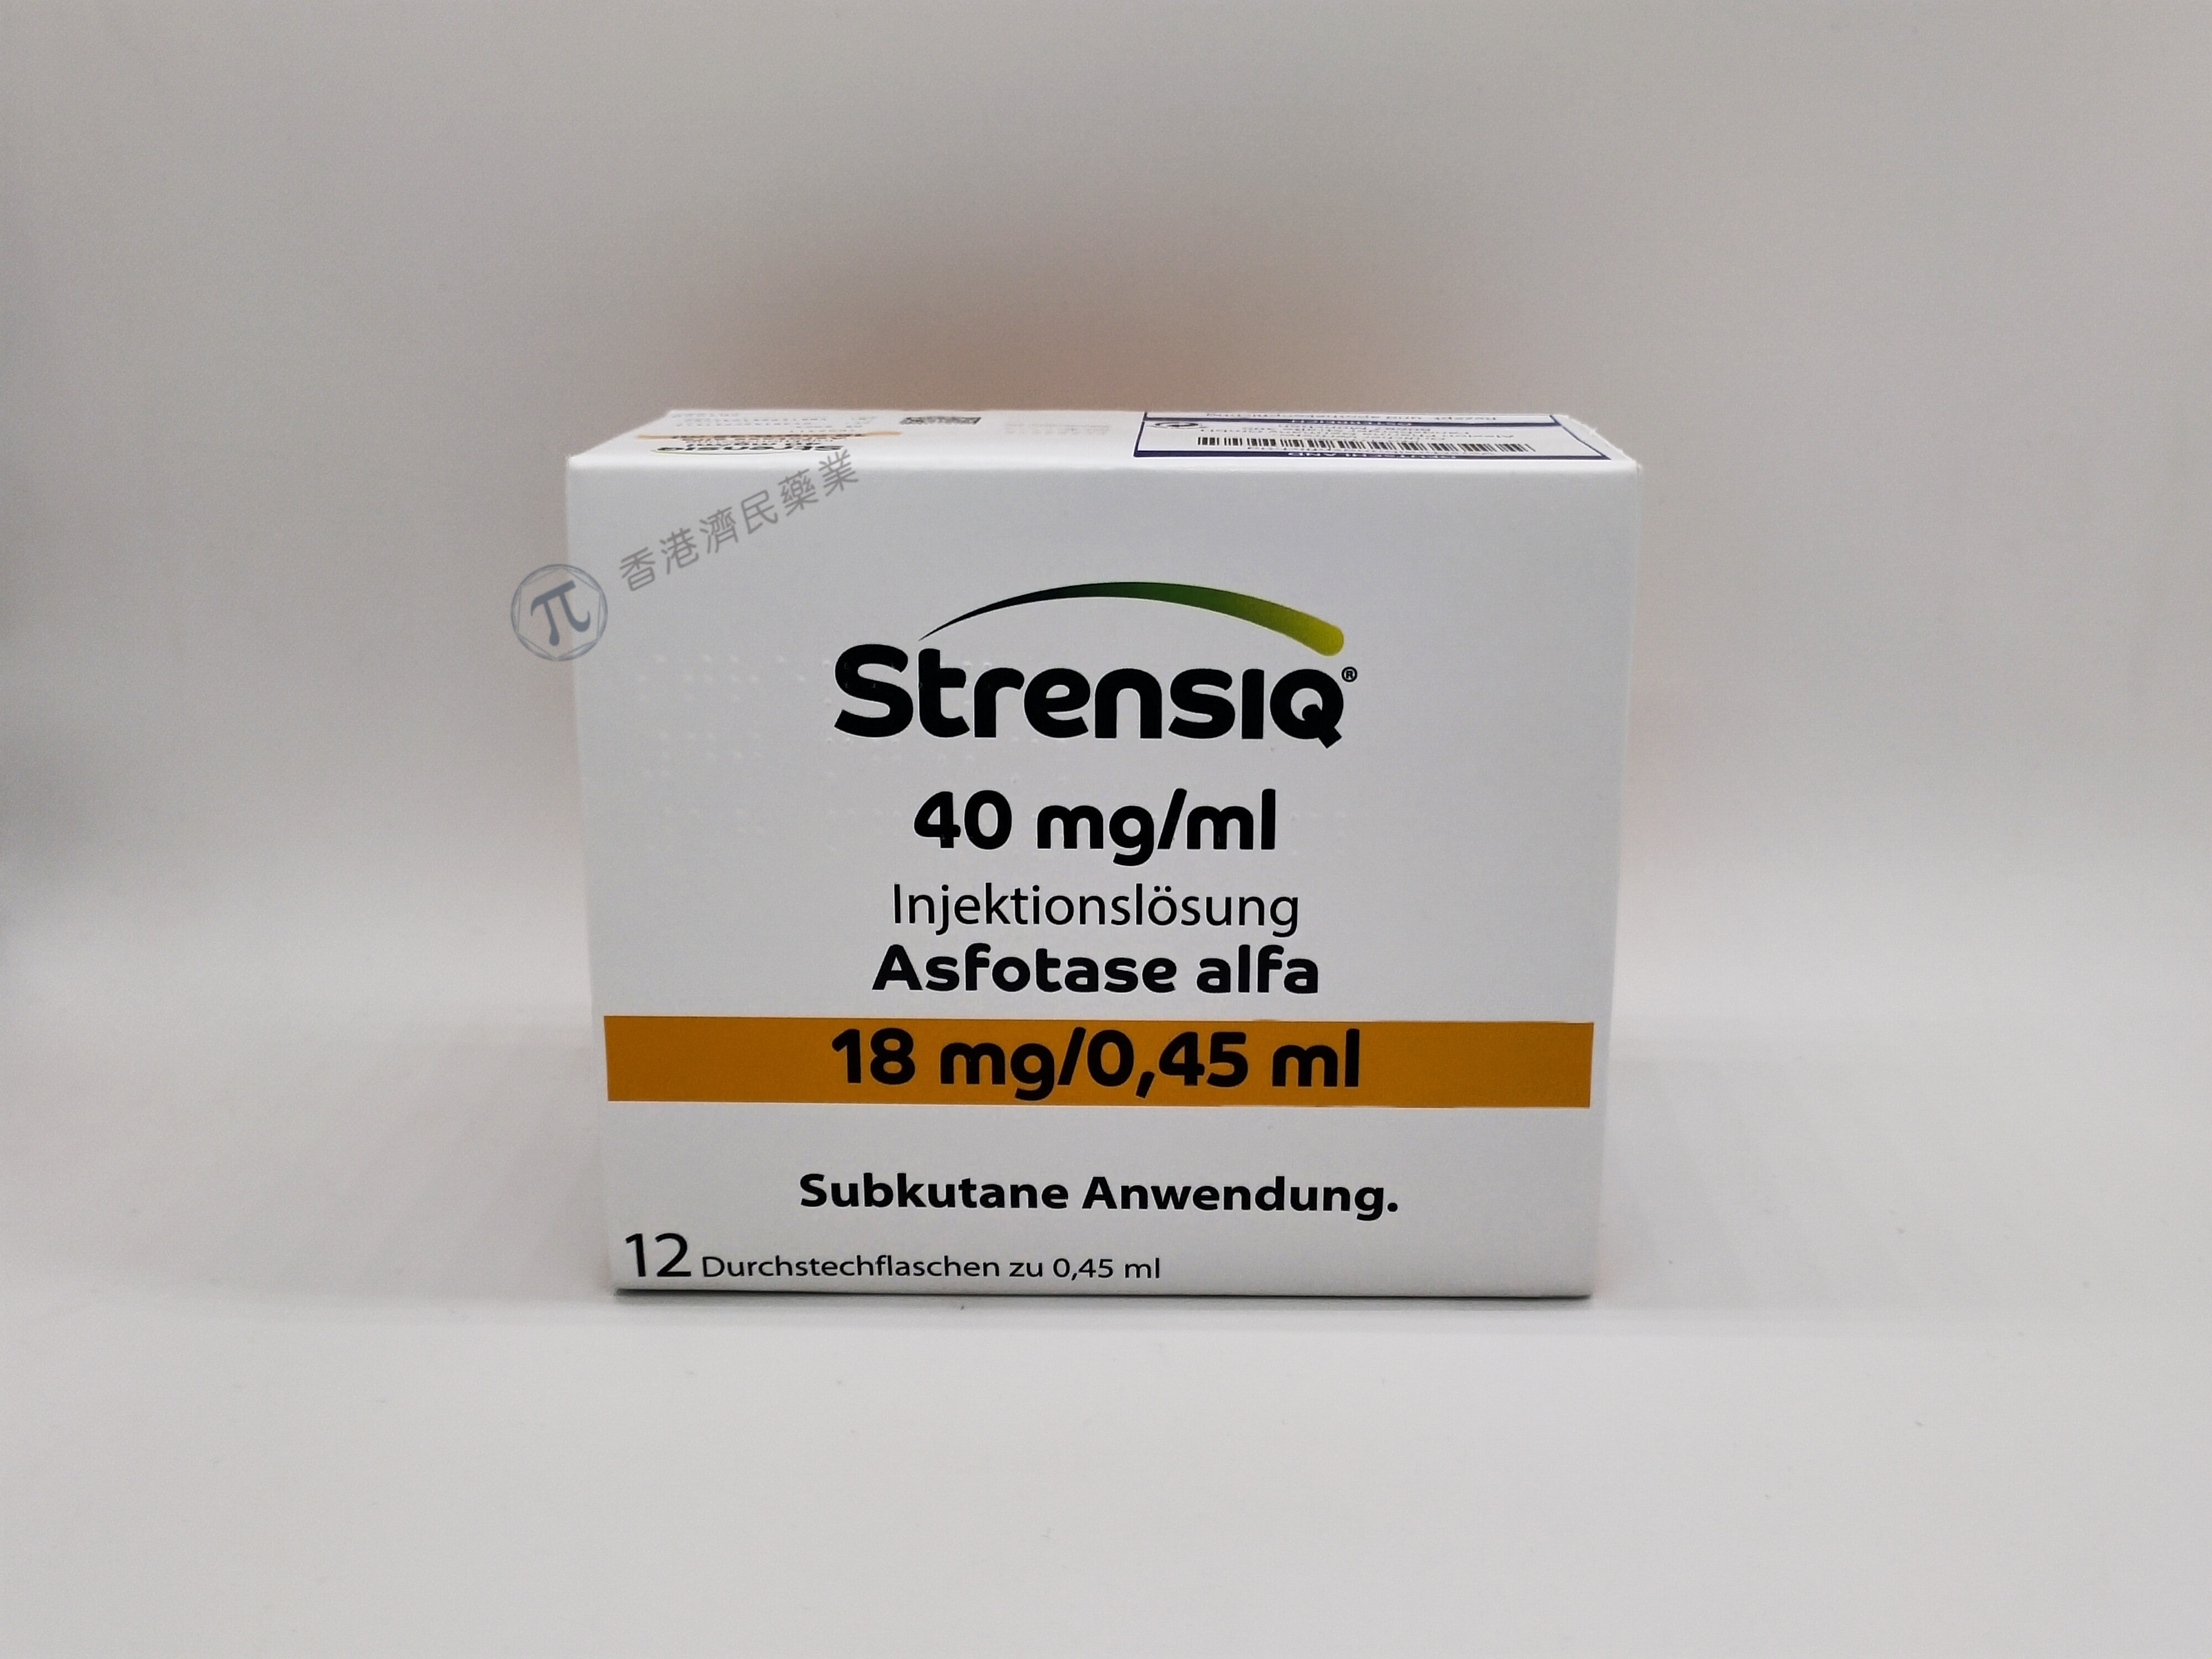 低磷酸酯酶症药物Strensiq剂量如何？该怎么保存？